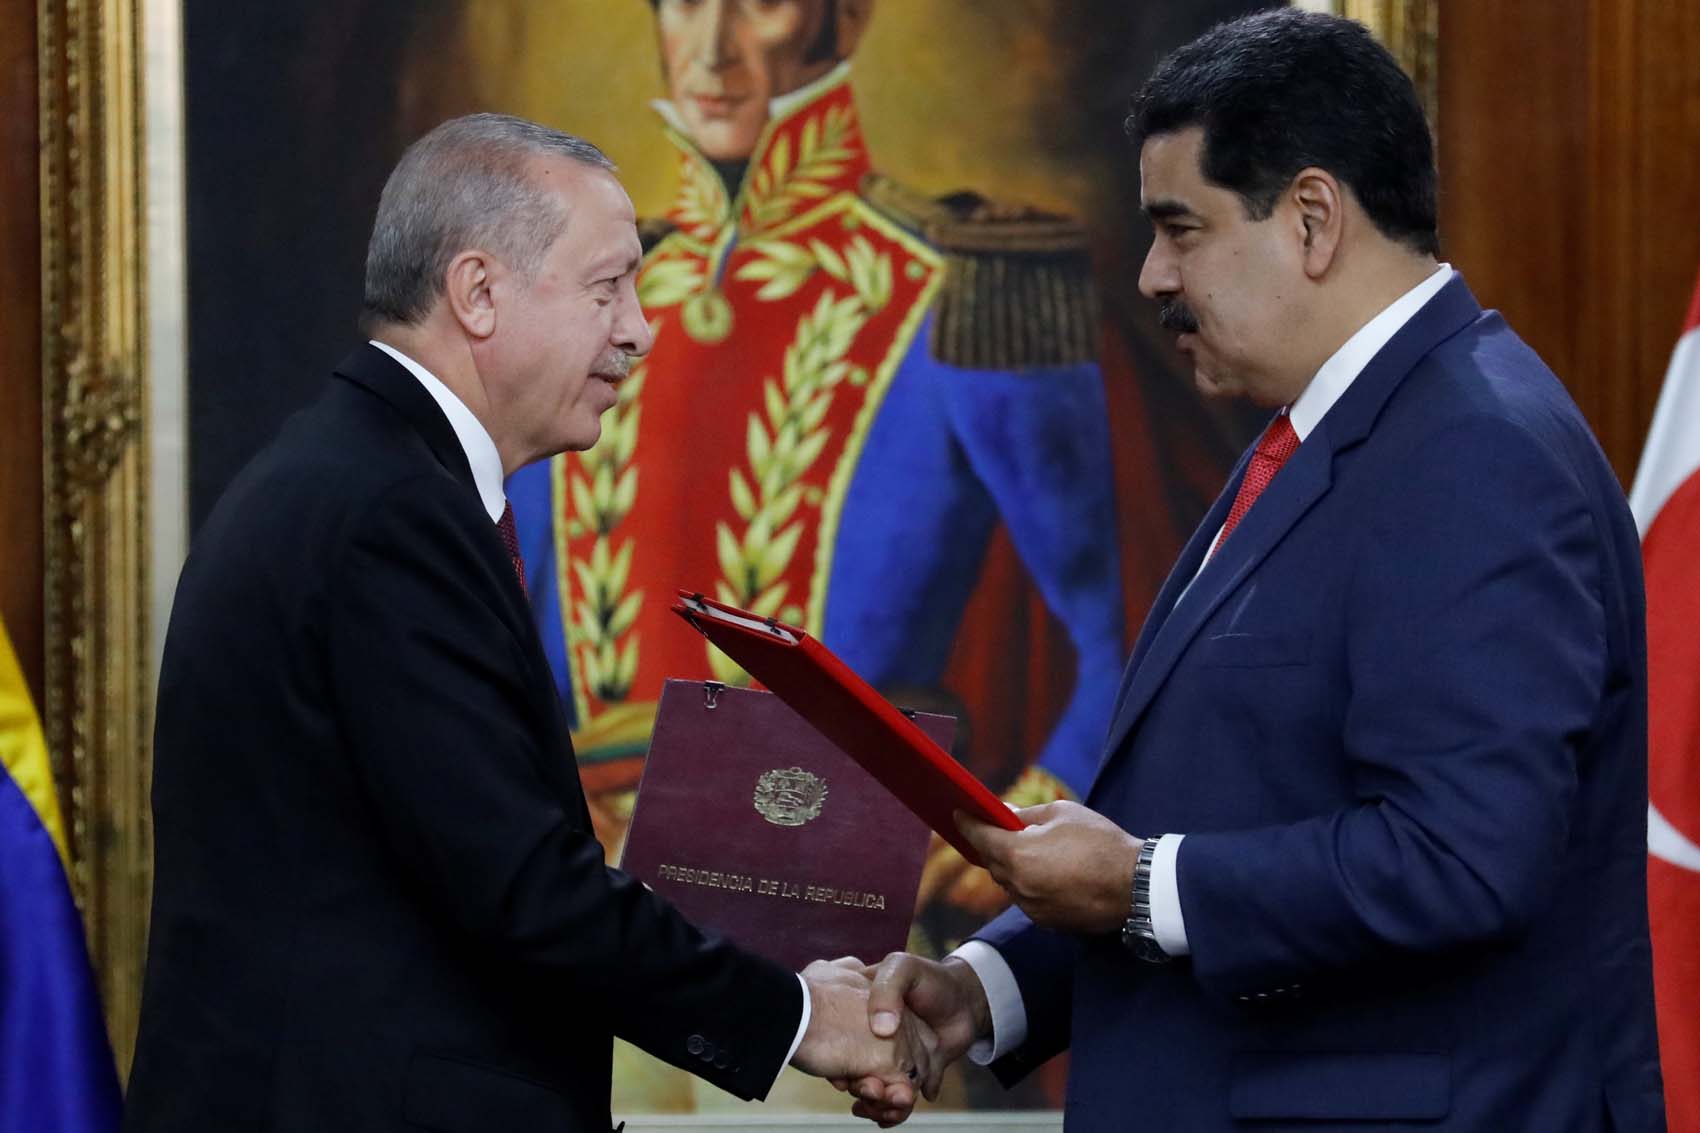 En video: ¿El régimen de Nicolás Maduro ahora tiene un aliado dentro de la Otan?